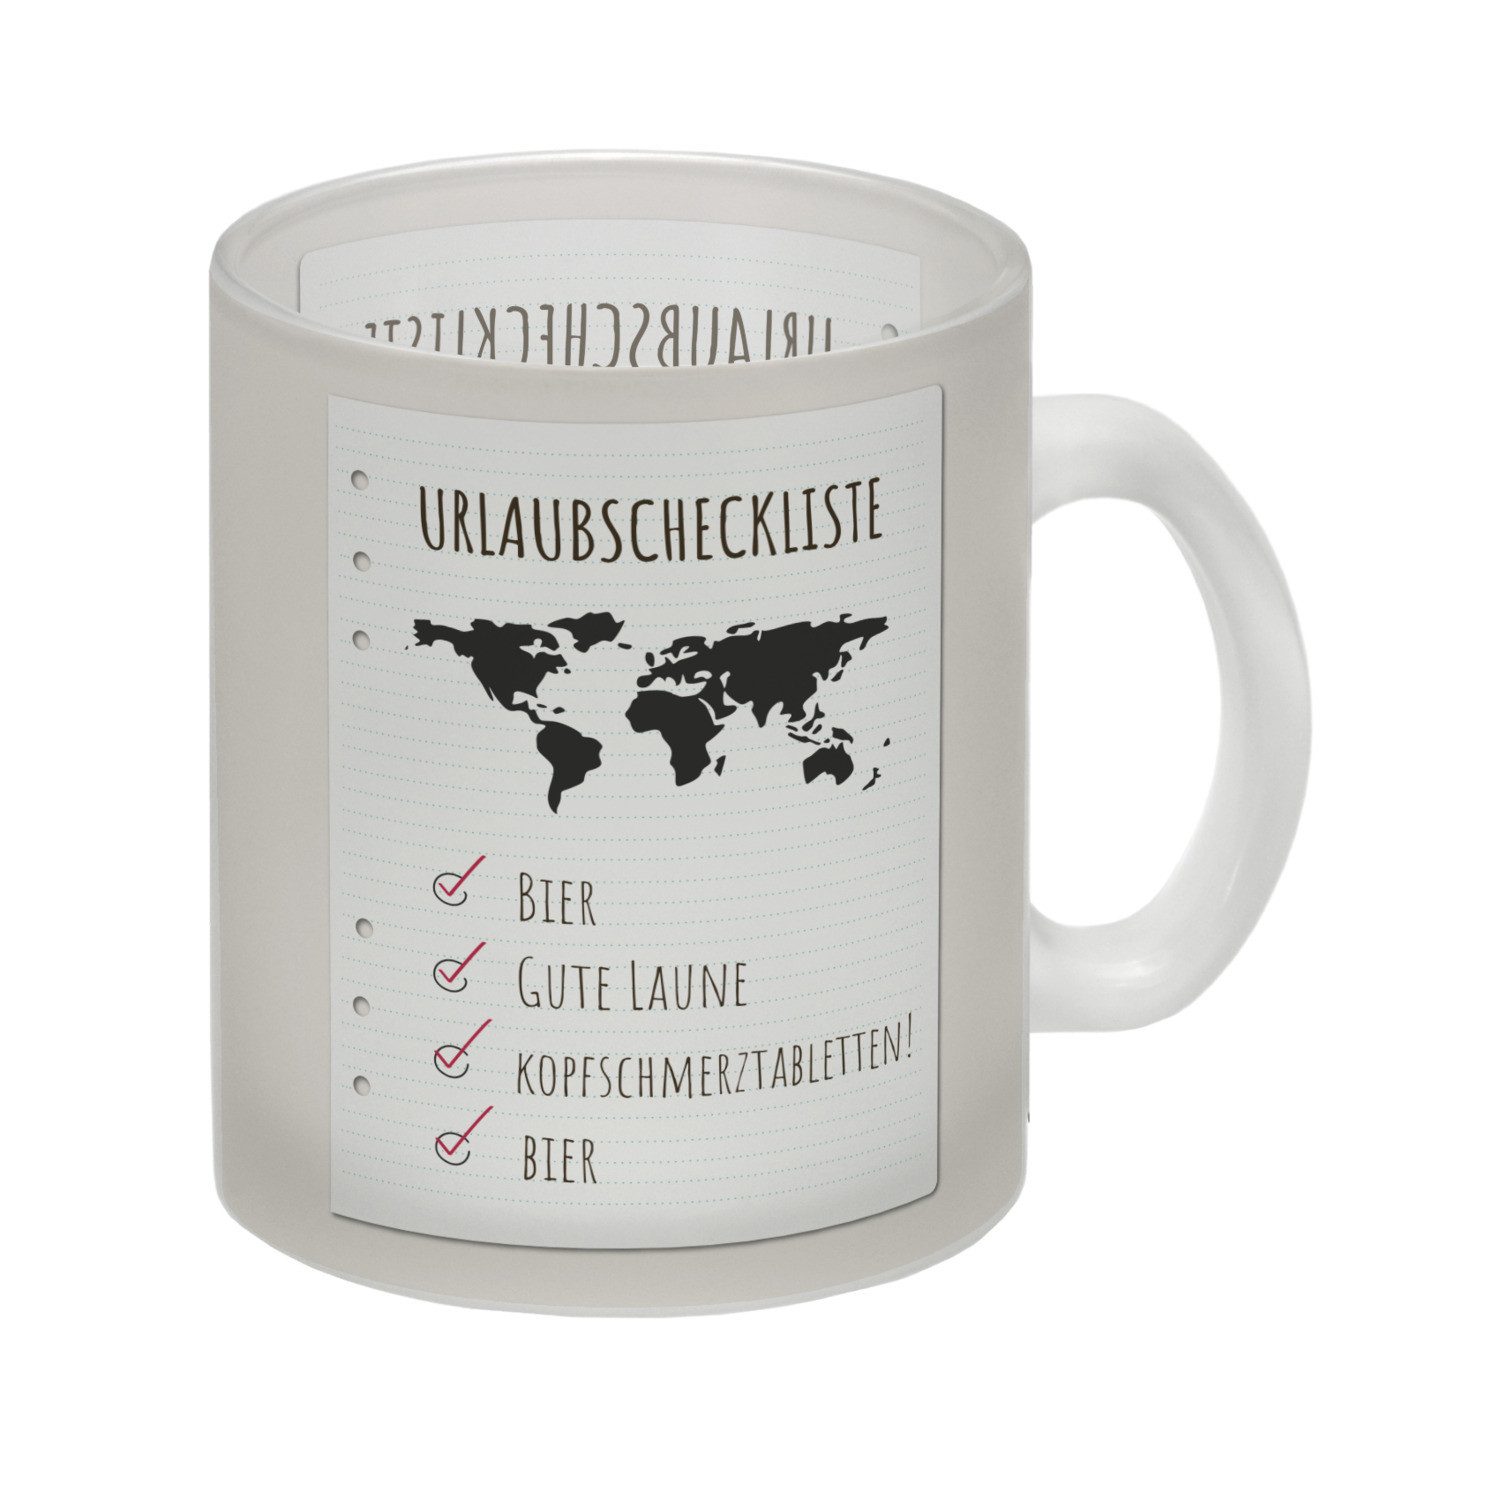 speecheese Tasse Glas Tasse Urlaubscheckliste für Partyurlaub mit Weltkarte